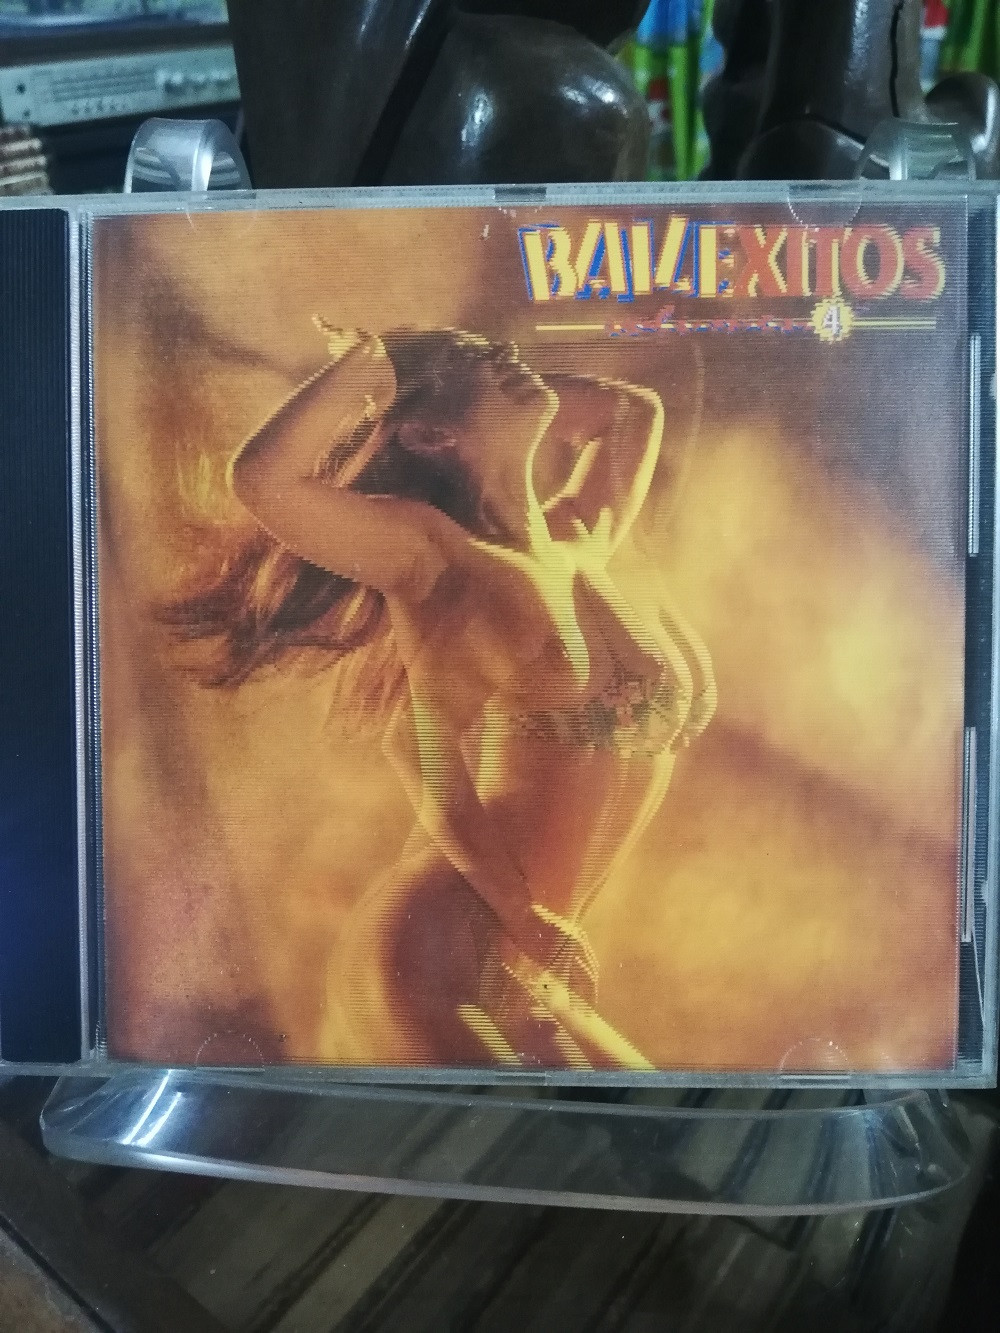 Imagen CD BAILEXITOS - BAILEXITOS VOL. 4